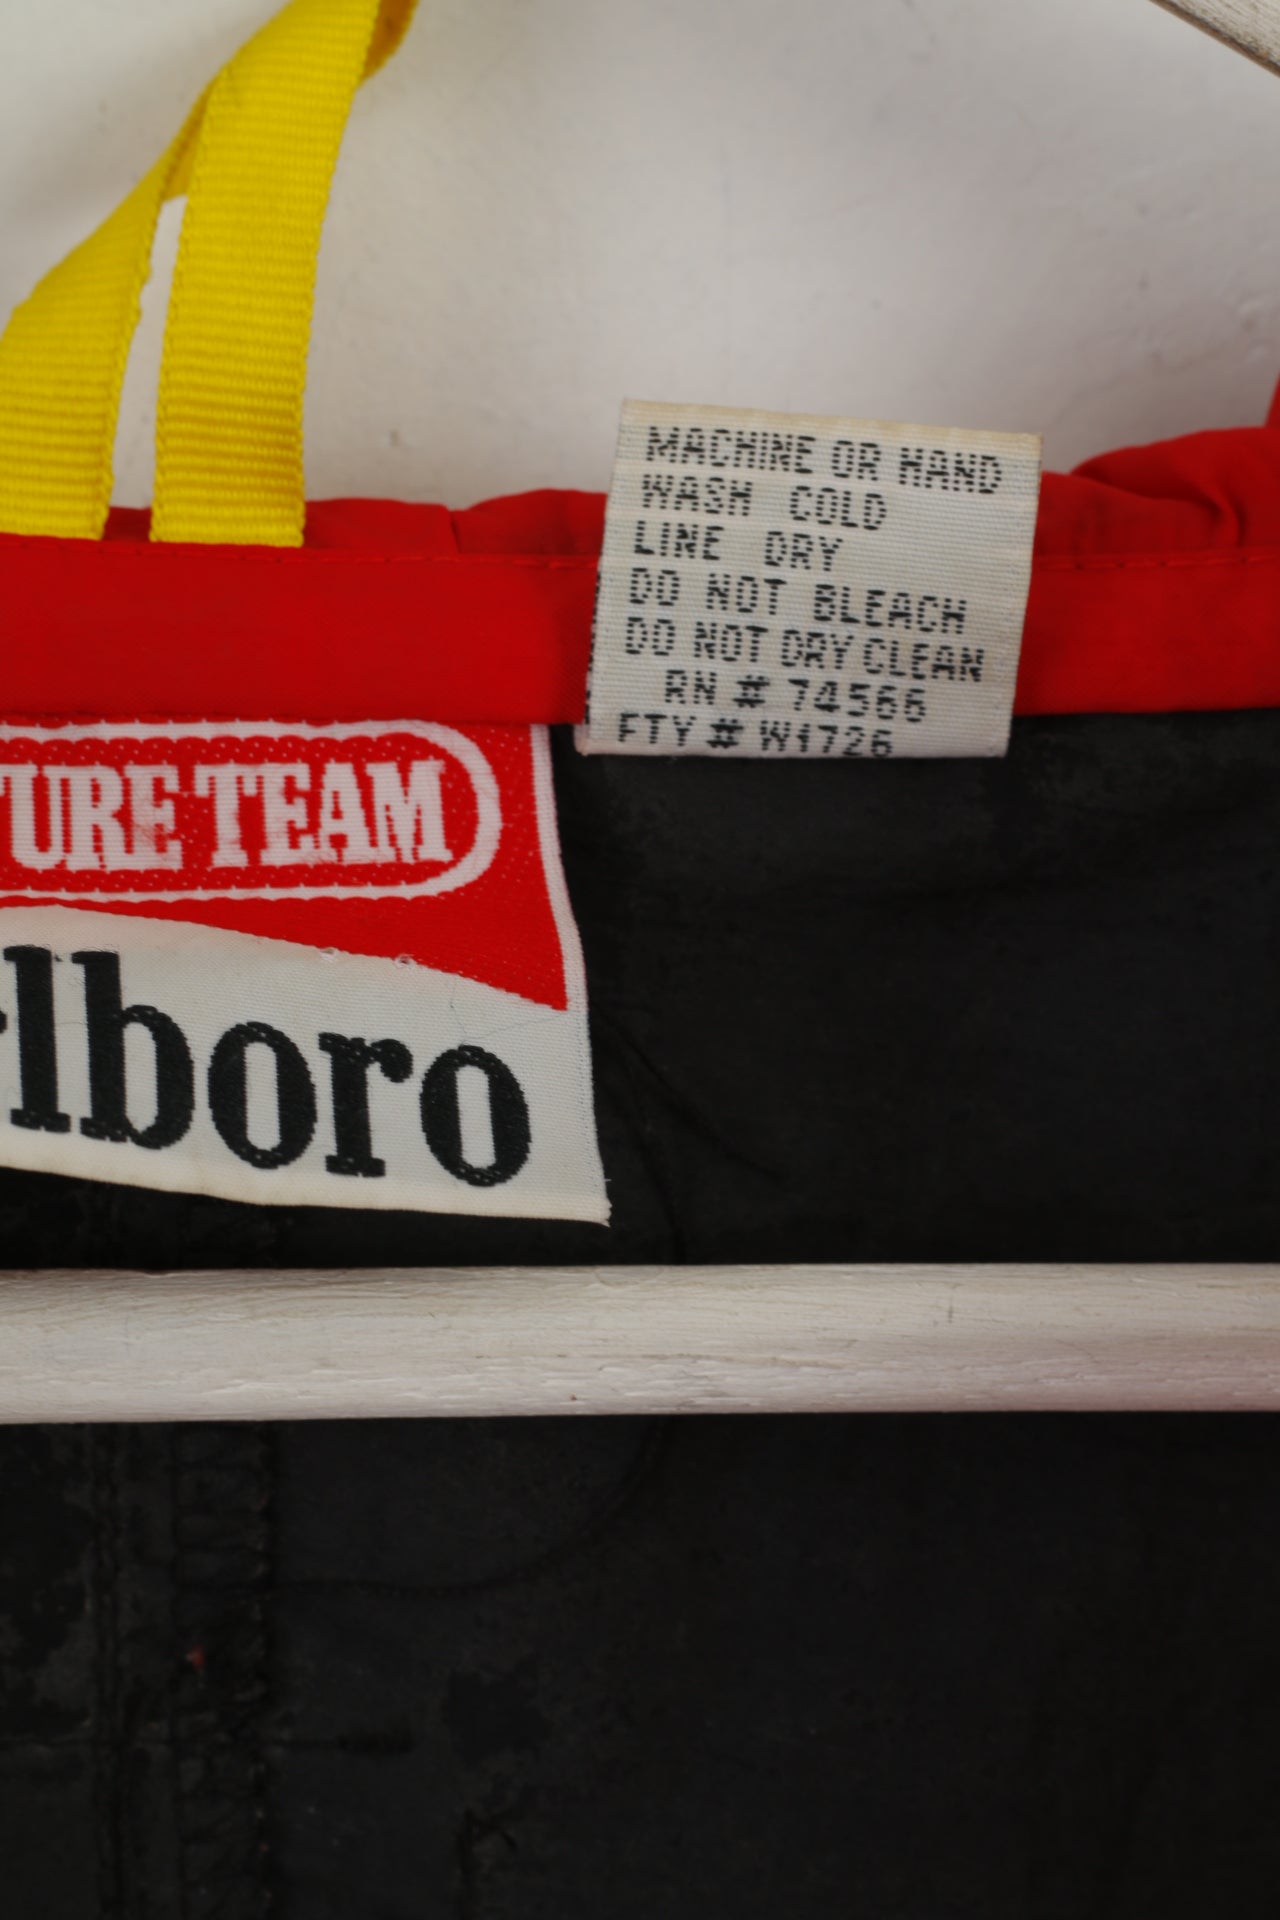 Giacca Marlboro Adventure Team da uomo L in nylon rosso nero vintage anni '90 con cerniera